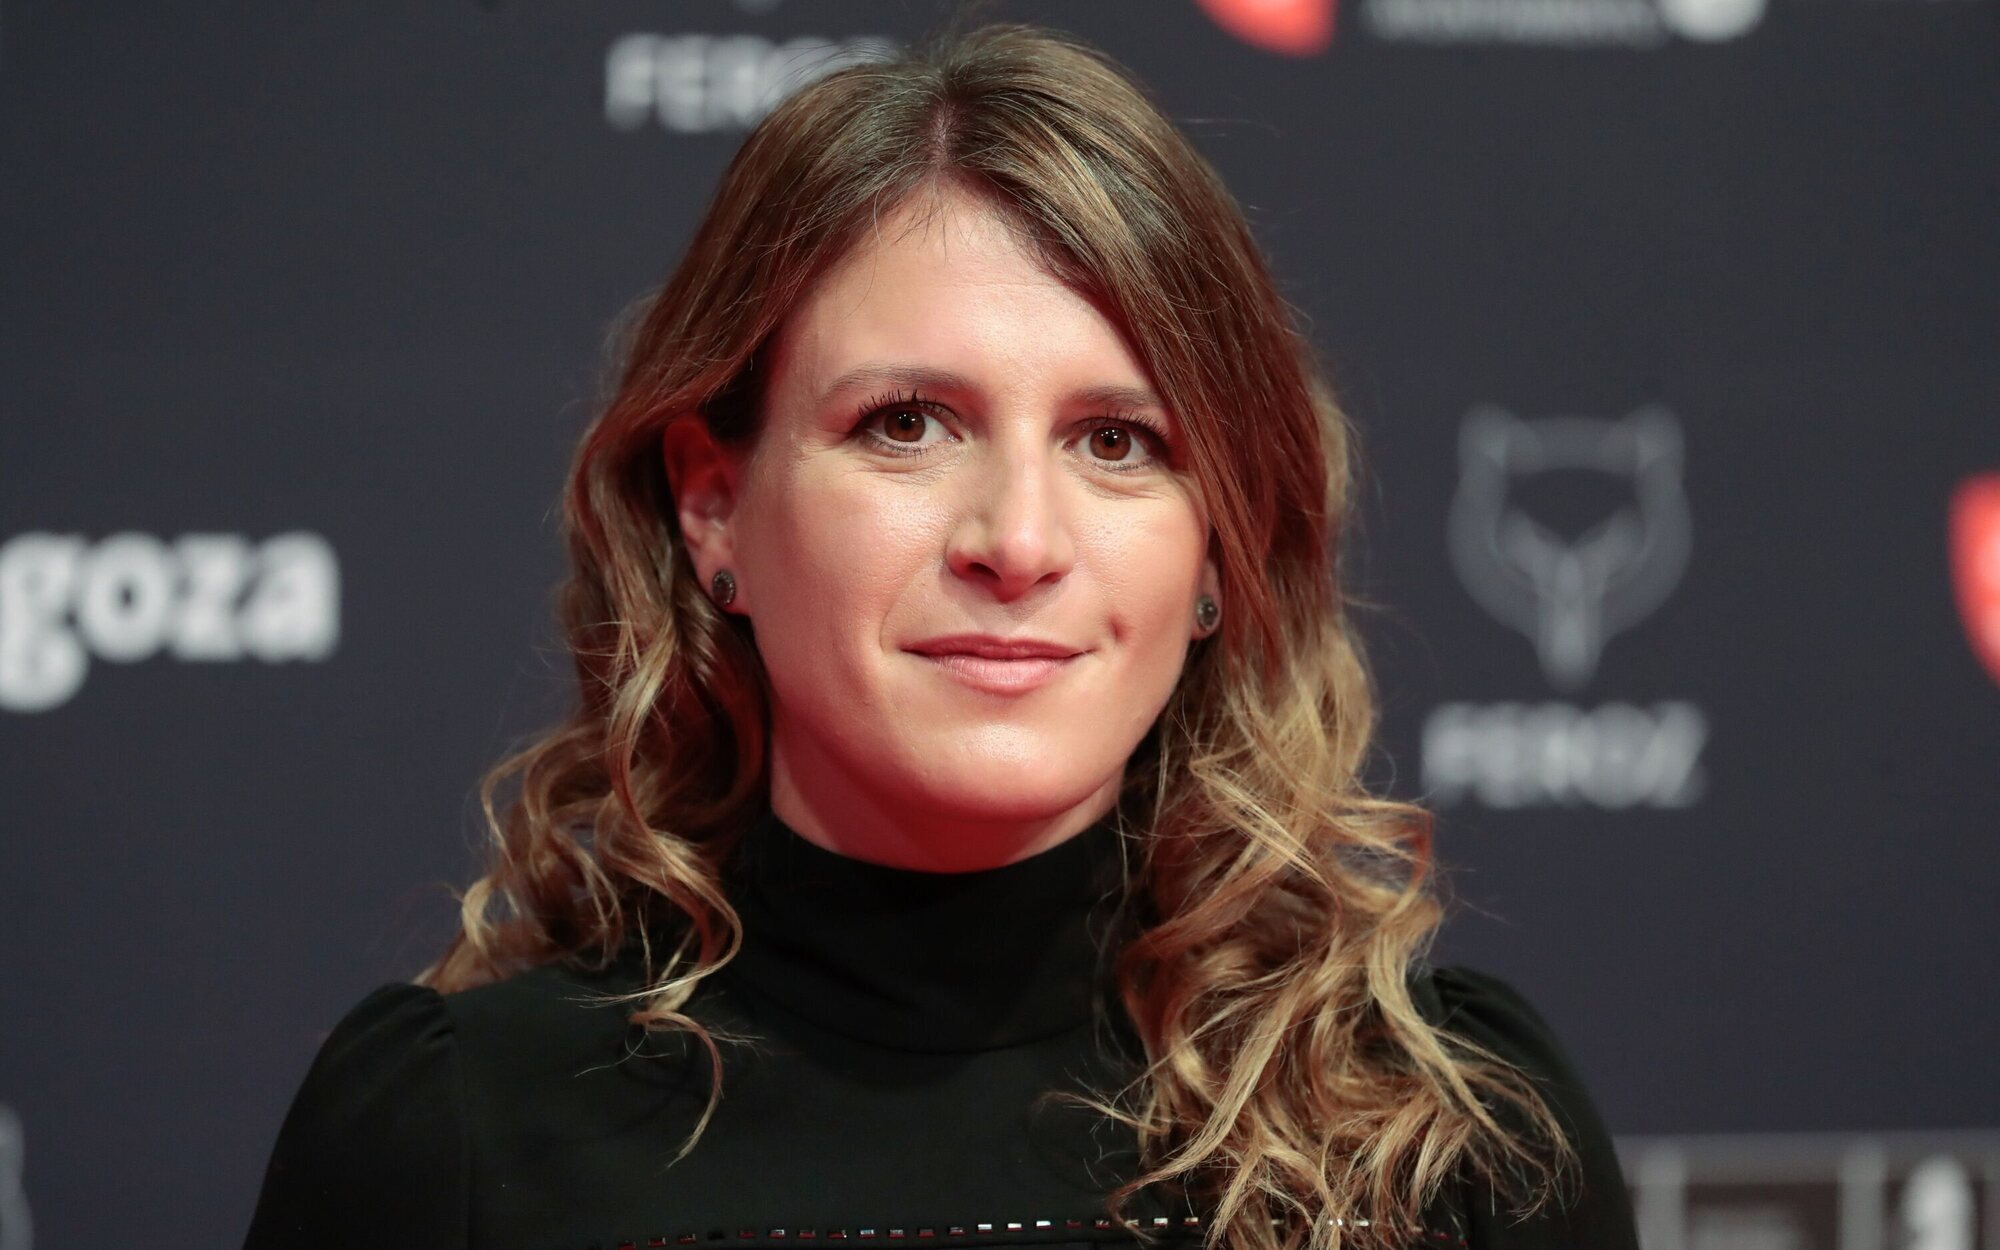 The Mediapro Studio ficha a Clara Roquet, directora ganadora de un Goya, para su equipo